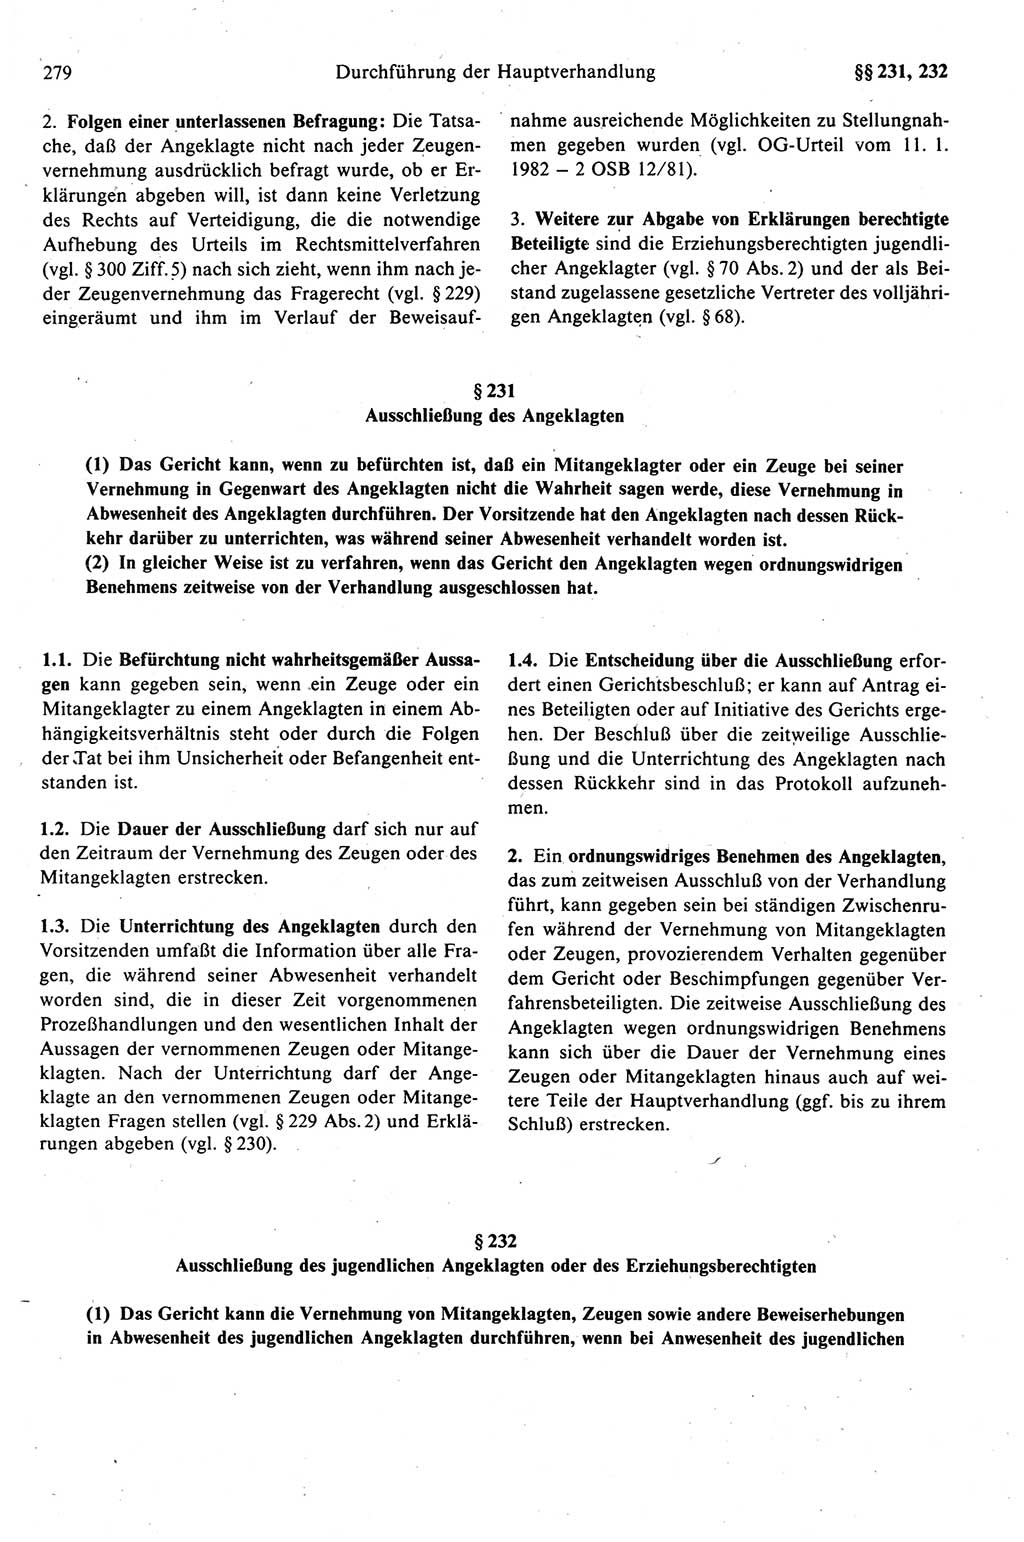 Strafprozeßrecht der DDR (Deutsche Demokratische Republik), Kommentar zur Strafprozeßordnung (StPO) 1989, Seite 279 (Strafprozeßr. DDR Komm. StPO 1989, S. 279)